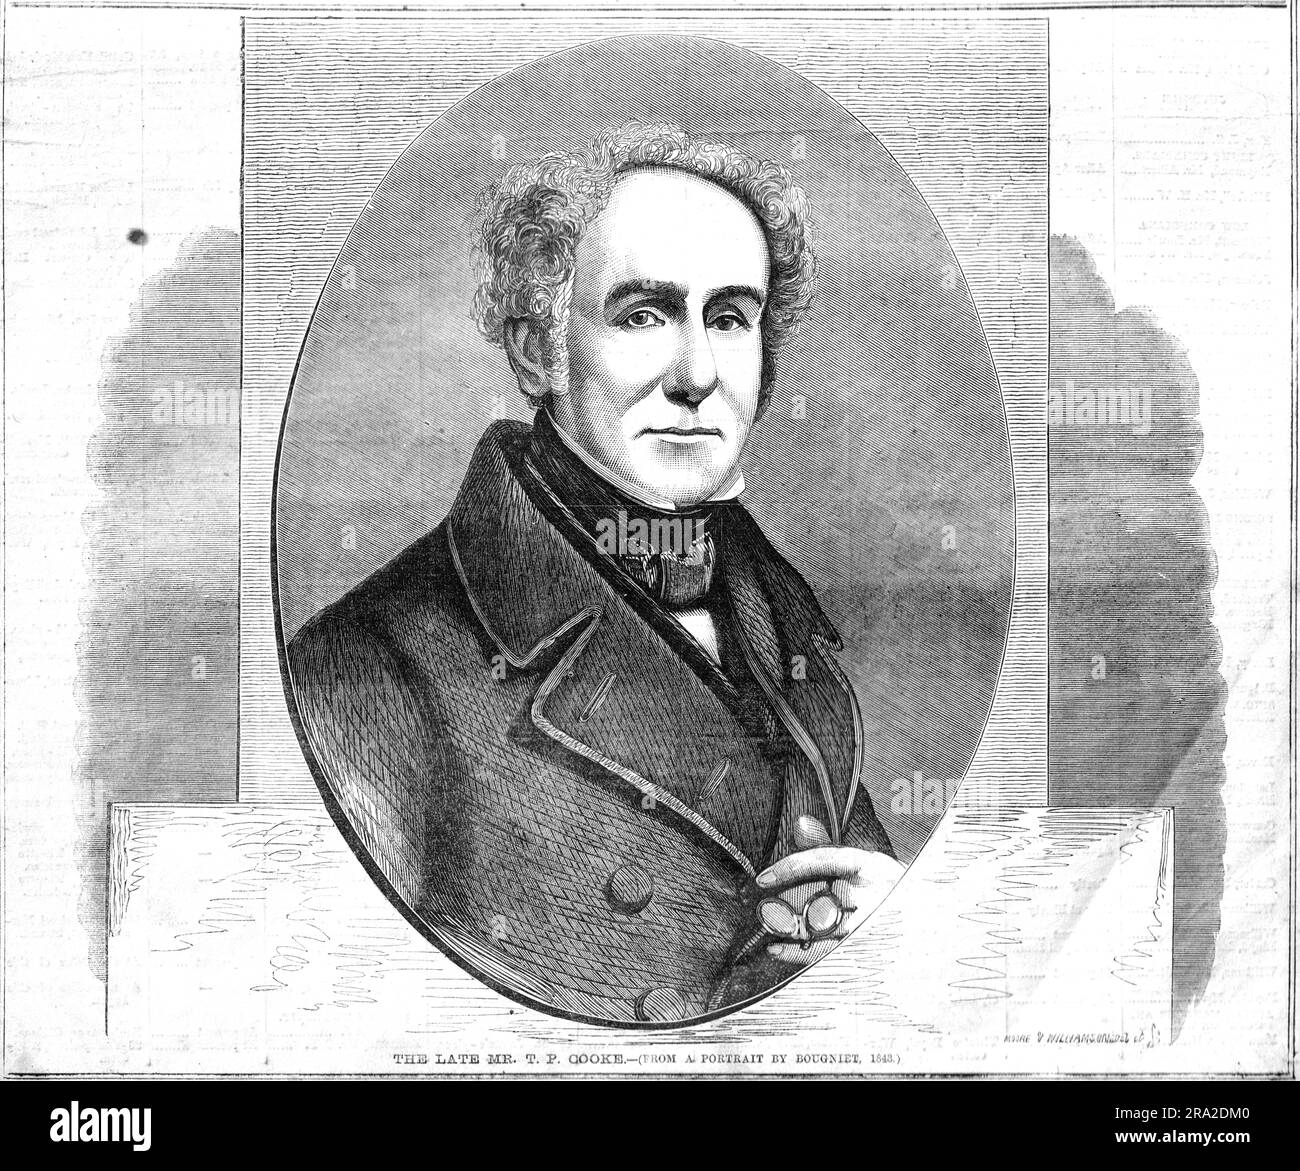 Thomas Potter Cooke (1786-1864) - gravure de Moore & Williamson d'après Charles-Louis Baugniet 1843 Banque D'Images